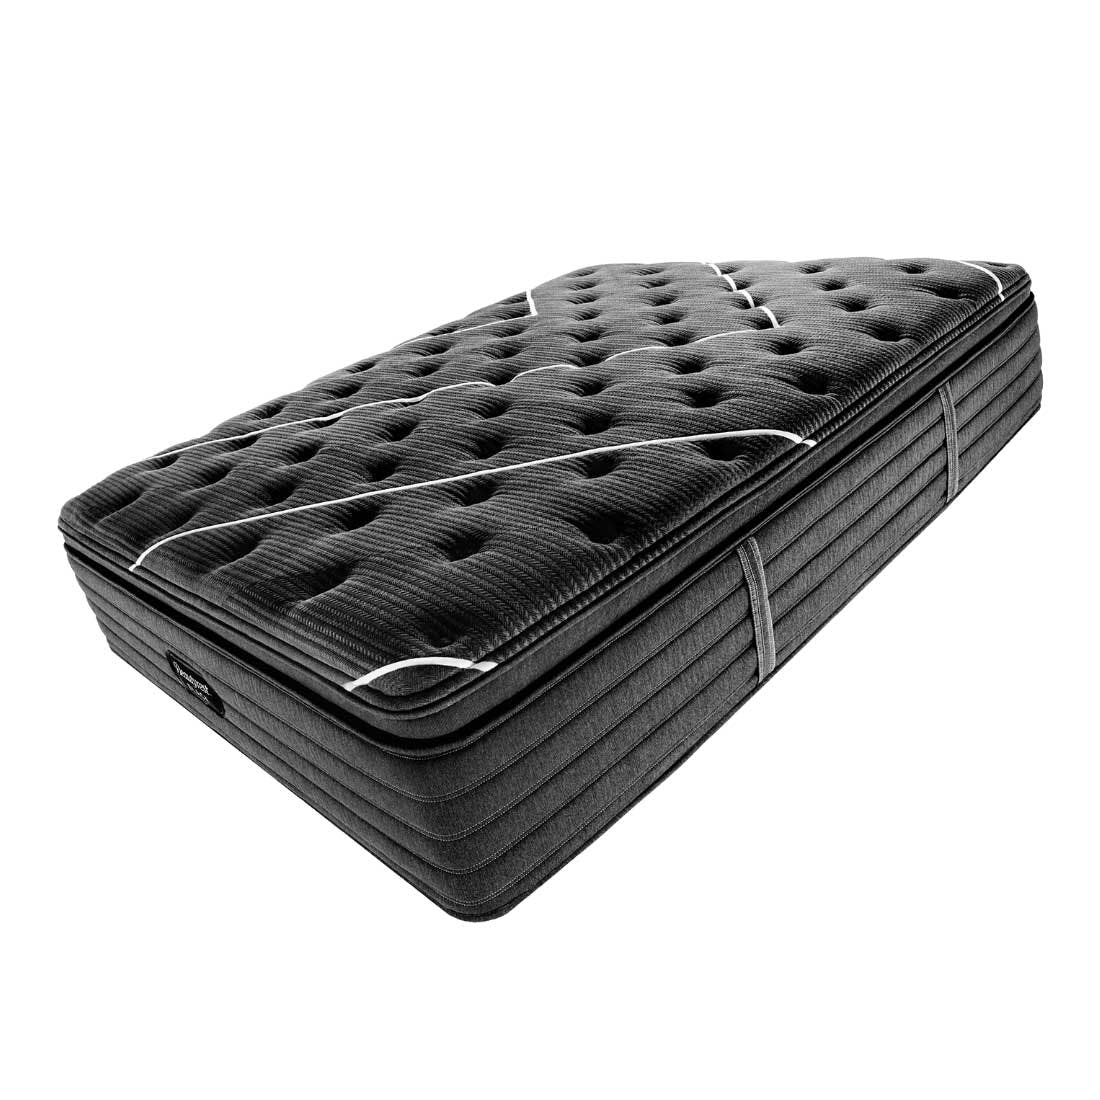 Beautyrest Black C-Class Plush Pillow Top